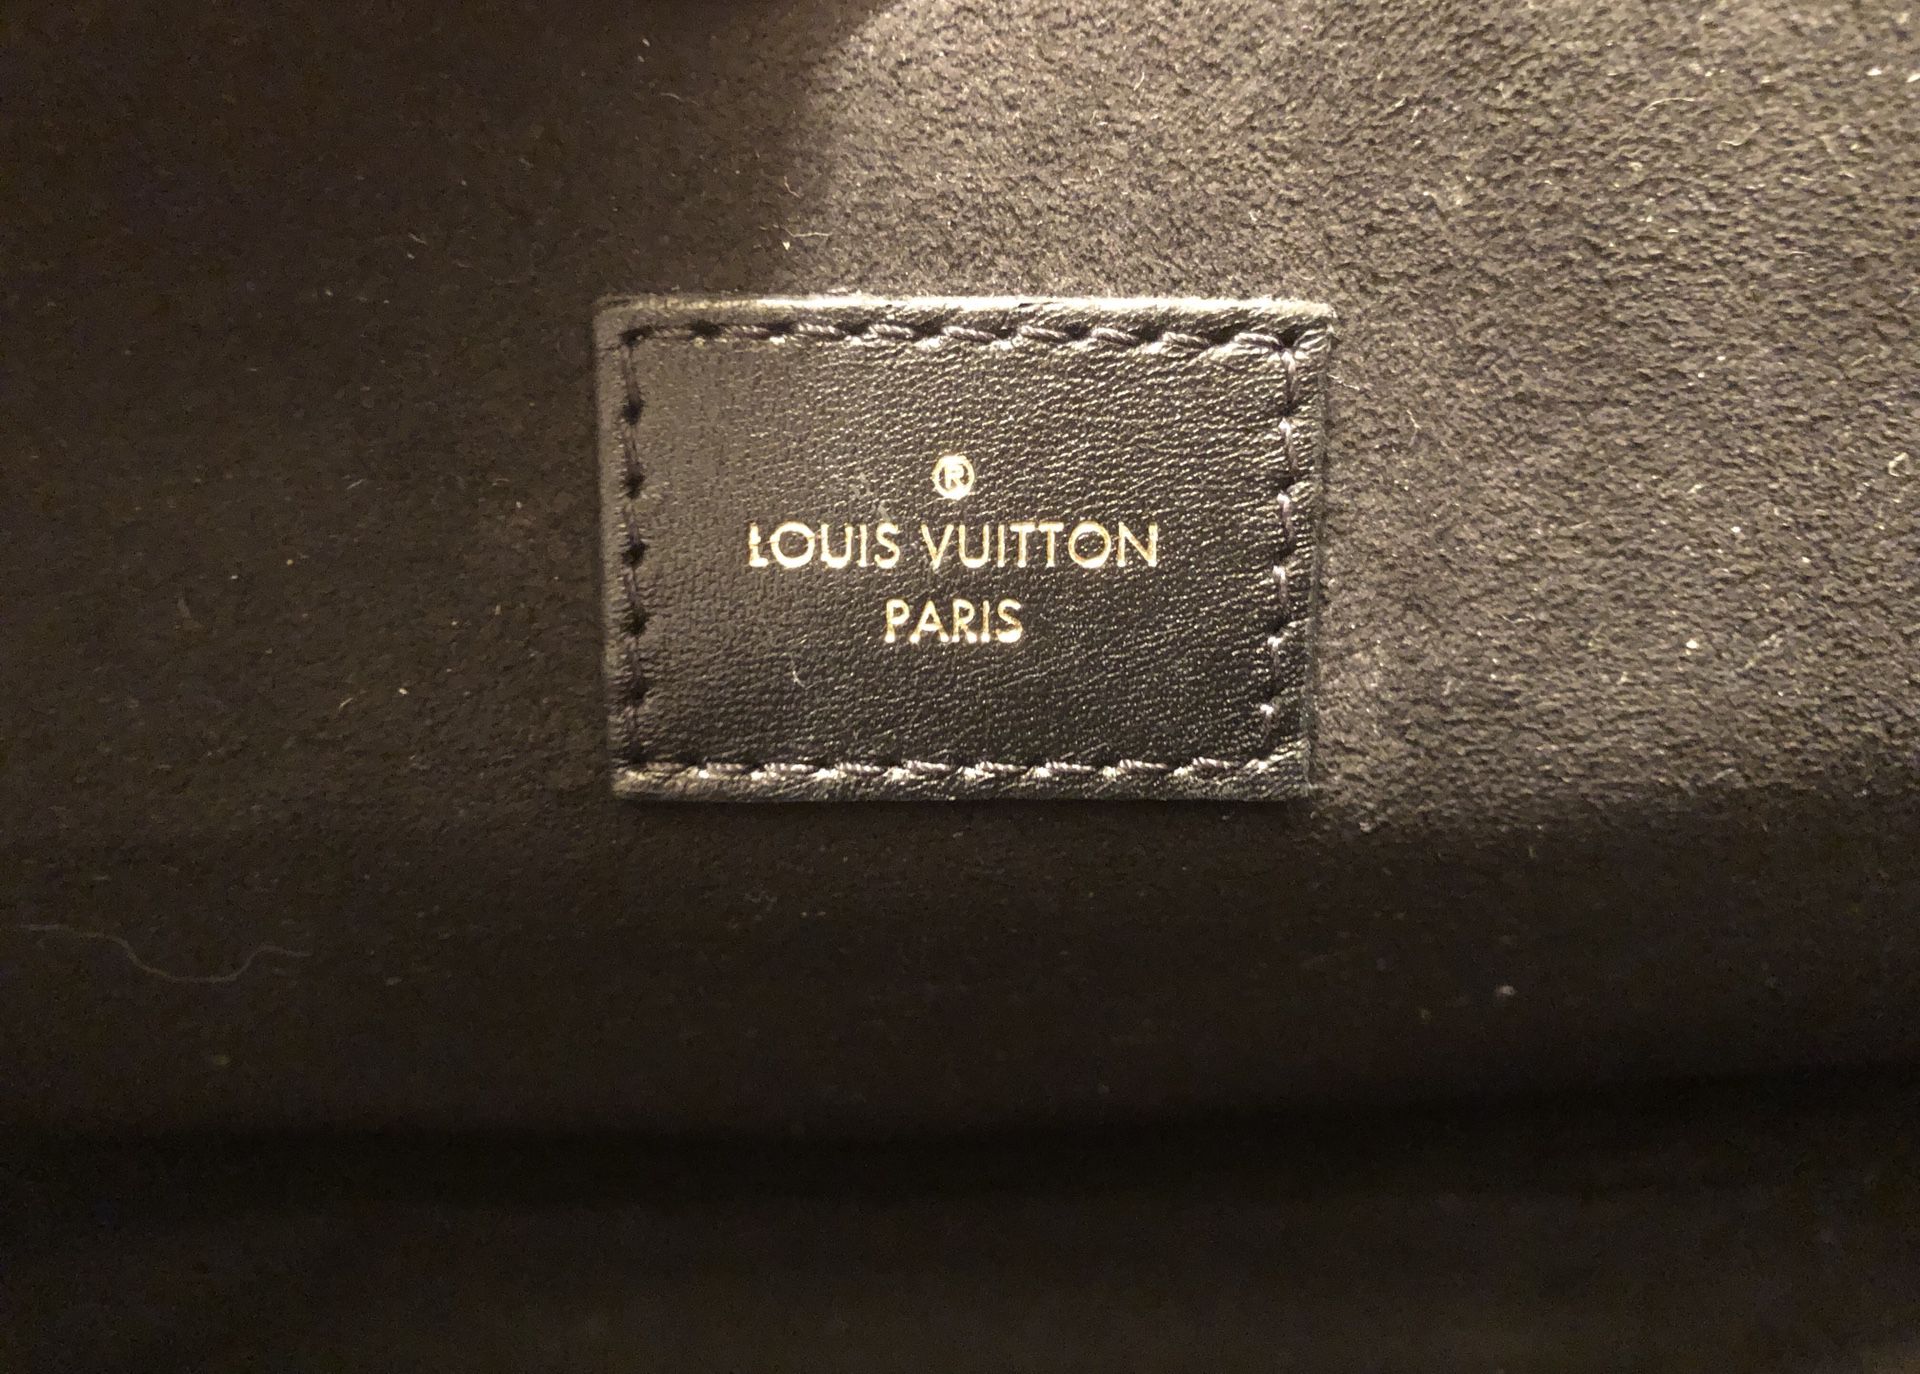 Louis Vuitton Pochette Métis for Sale in Phoenix, AZ - OfferUp